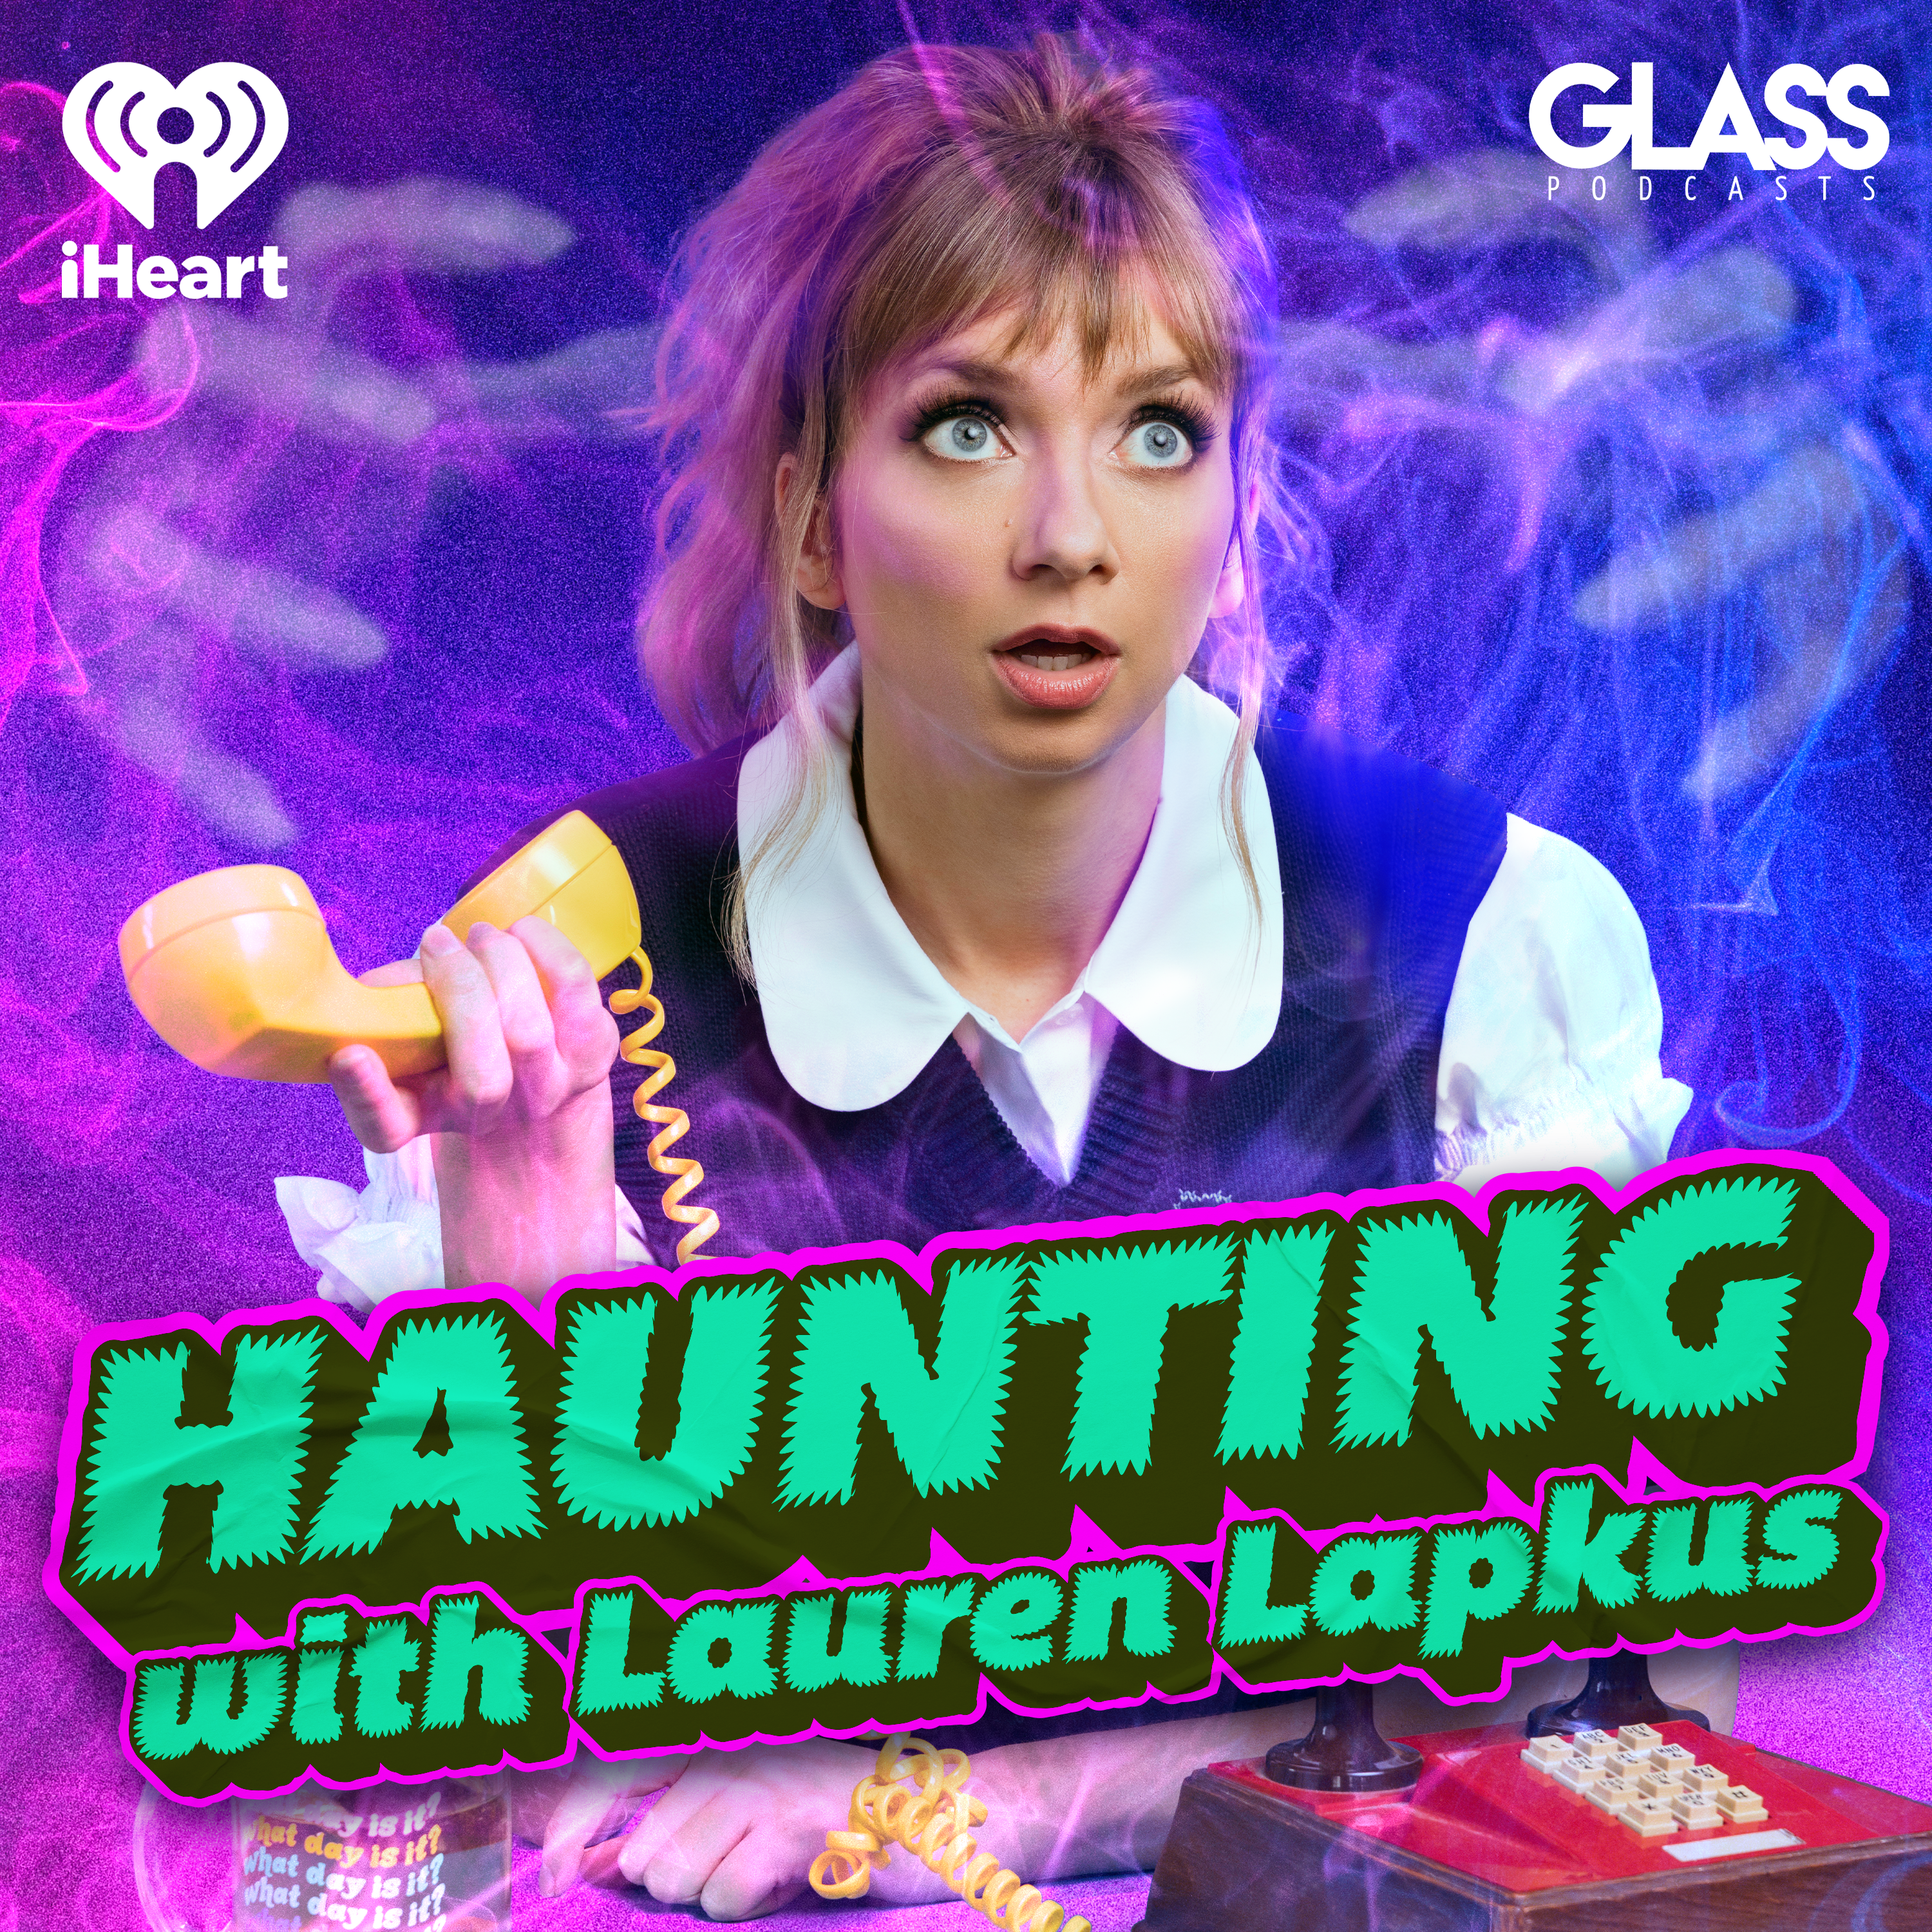 Introducing: Haunting with Lauren Lapkus